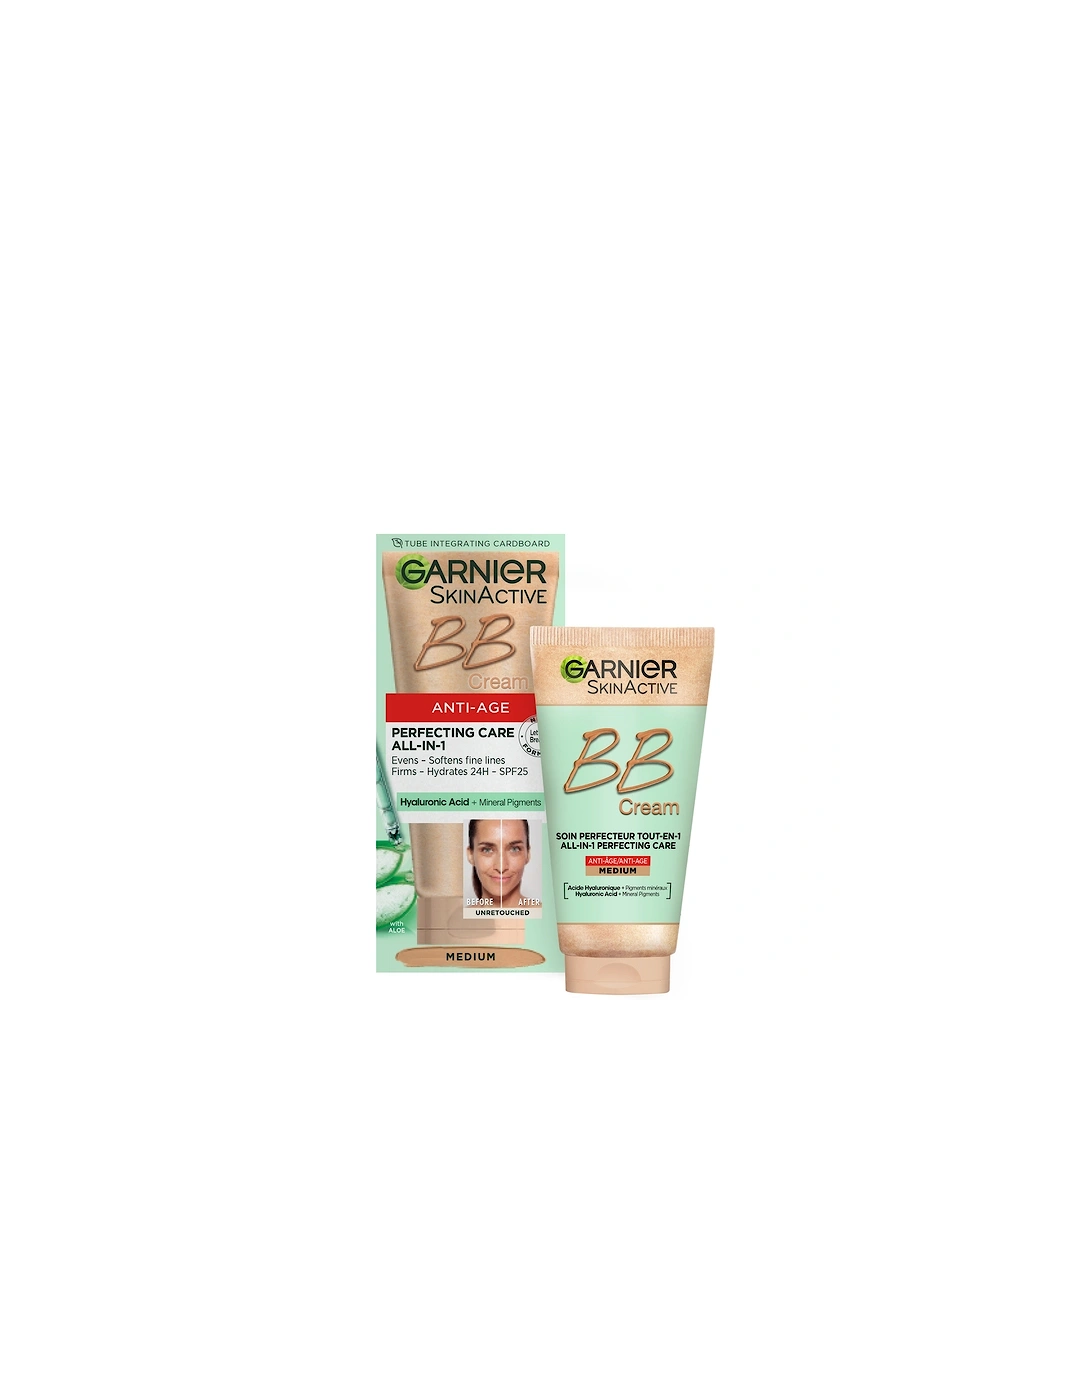 SkinActive BB Cream Anti-Aging Tinted Moisturiser SPF25 - Medium, 2 of 1